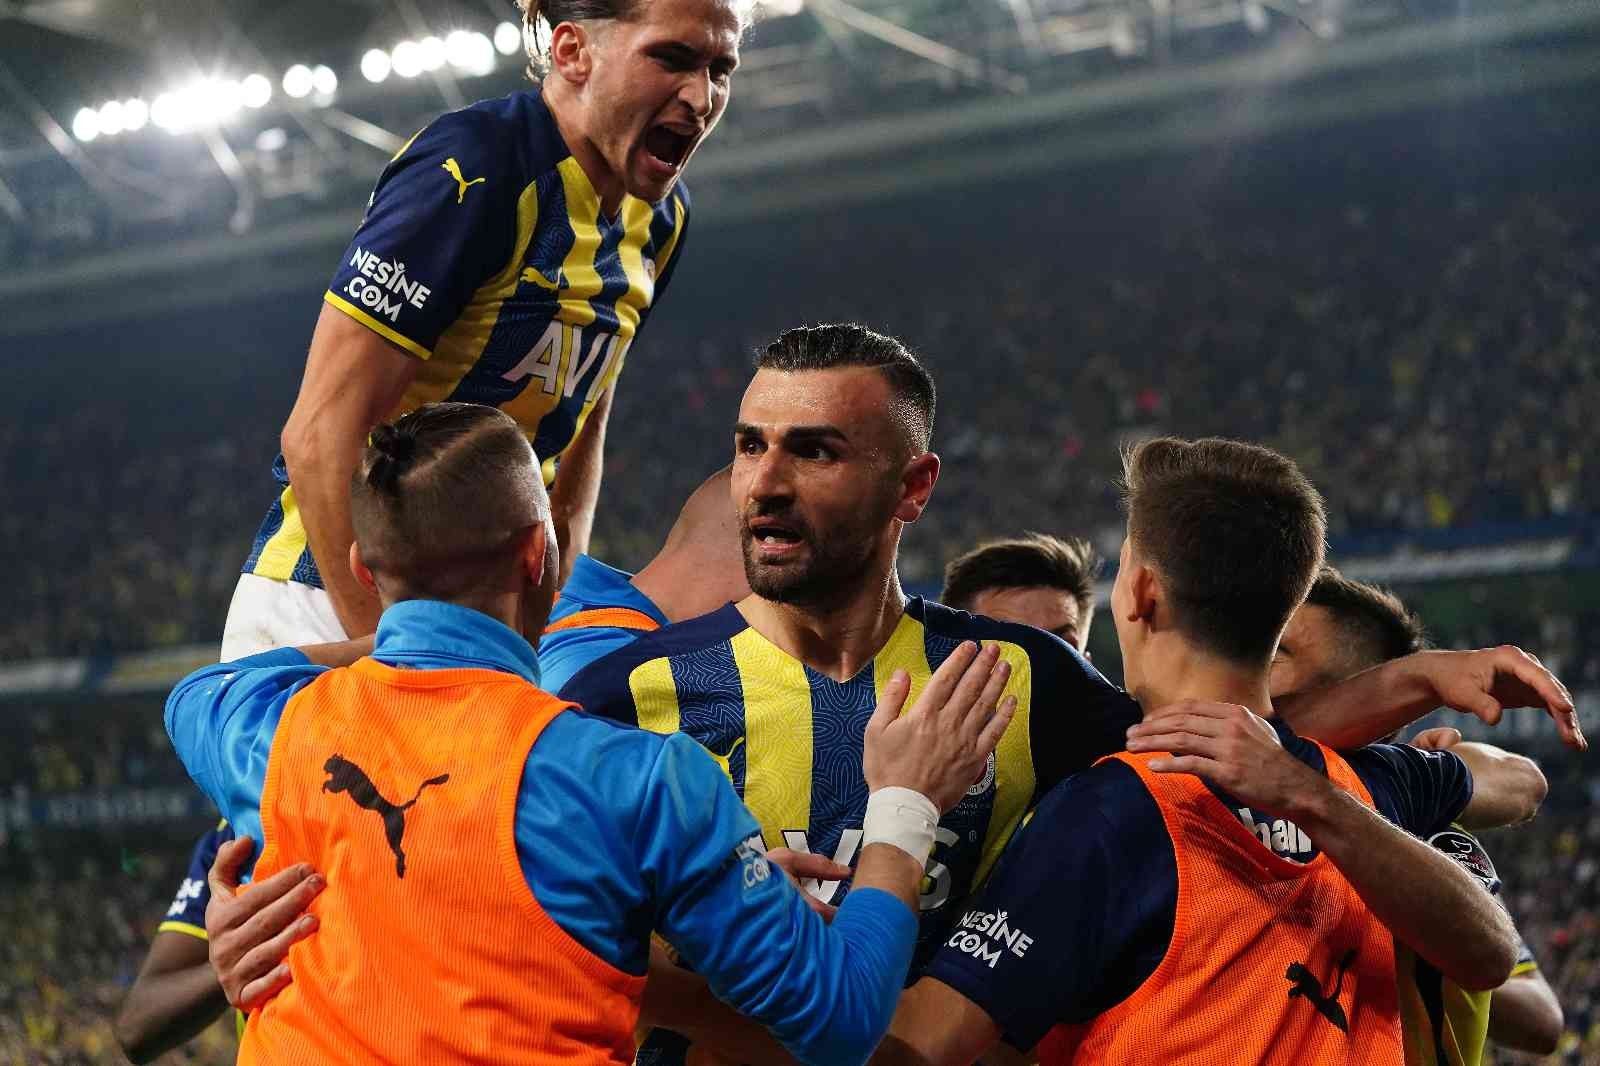 Spor Toto Süper Lig’in 32. haftasında Fenerbahçe, sahasında ezeli rakibi Galatasaray’ı konuk etti. Sarı-lacivertliler sahadan 2-0’lık galibiyetle ...